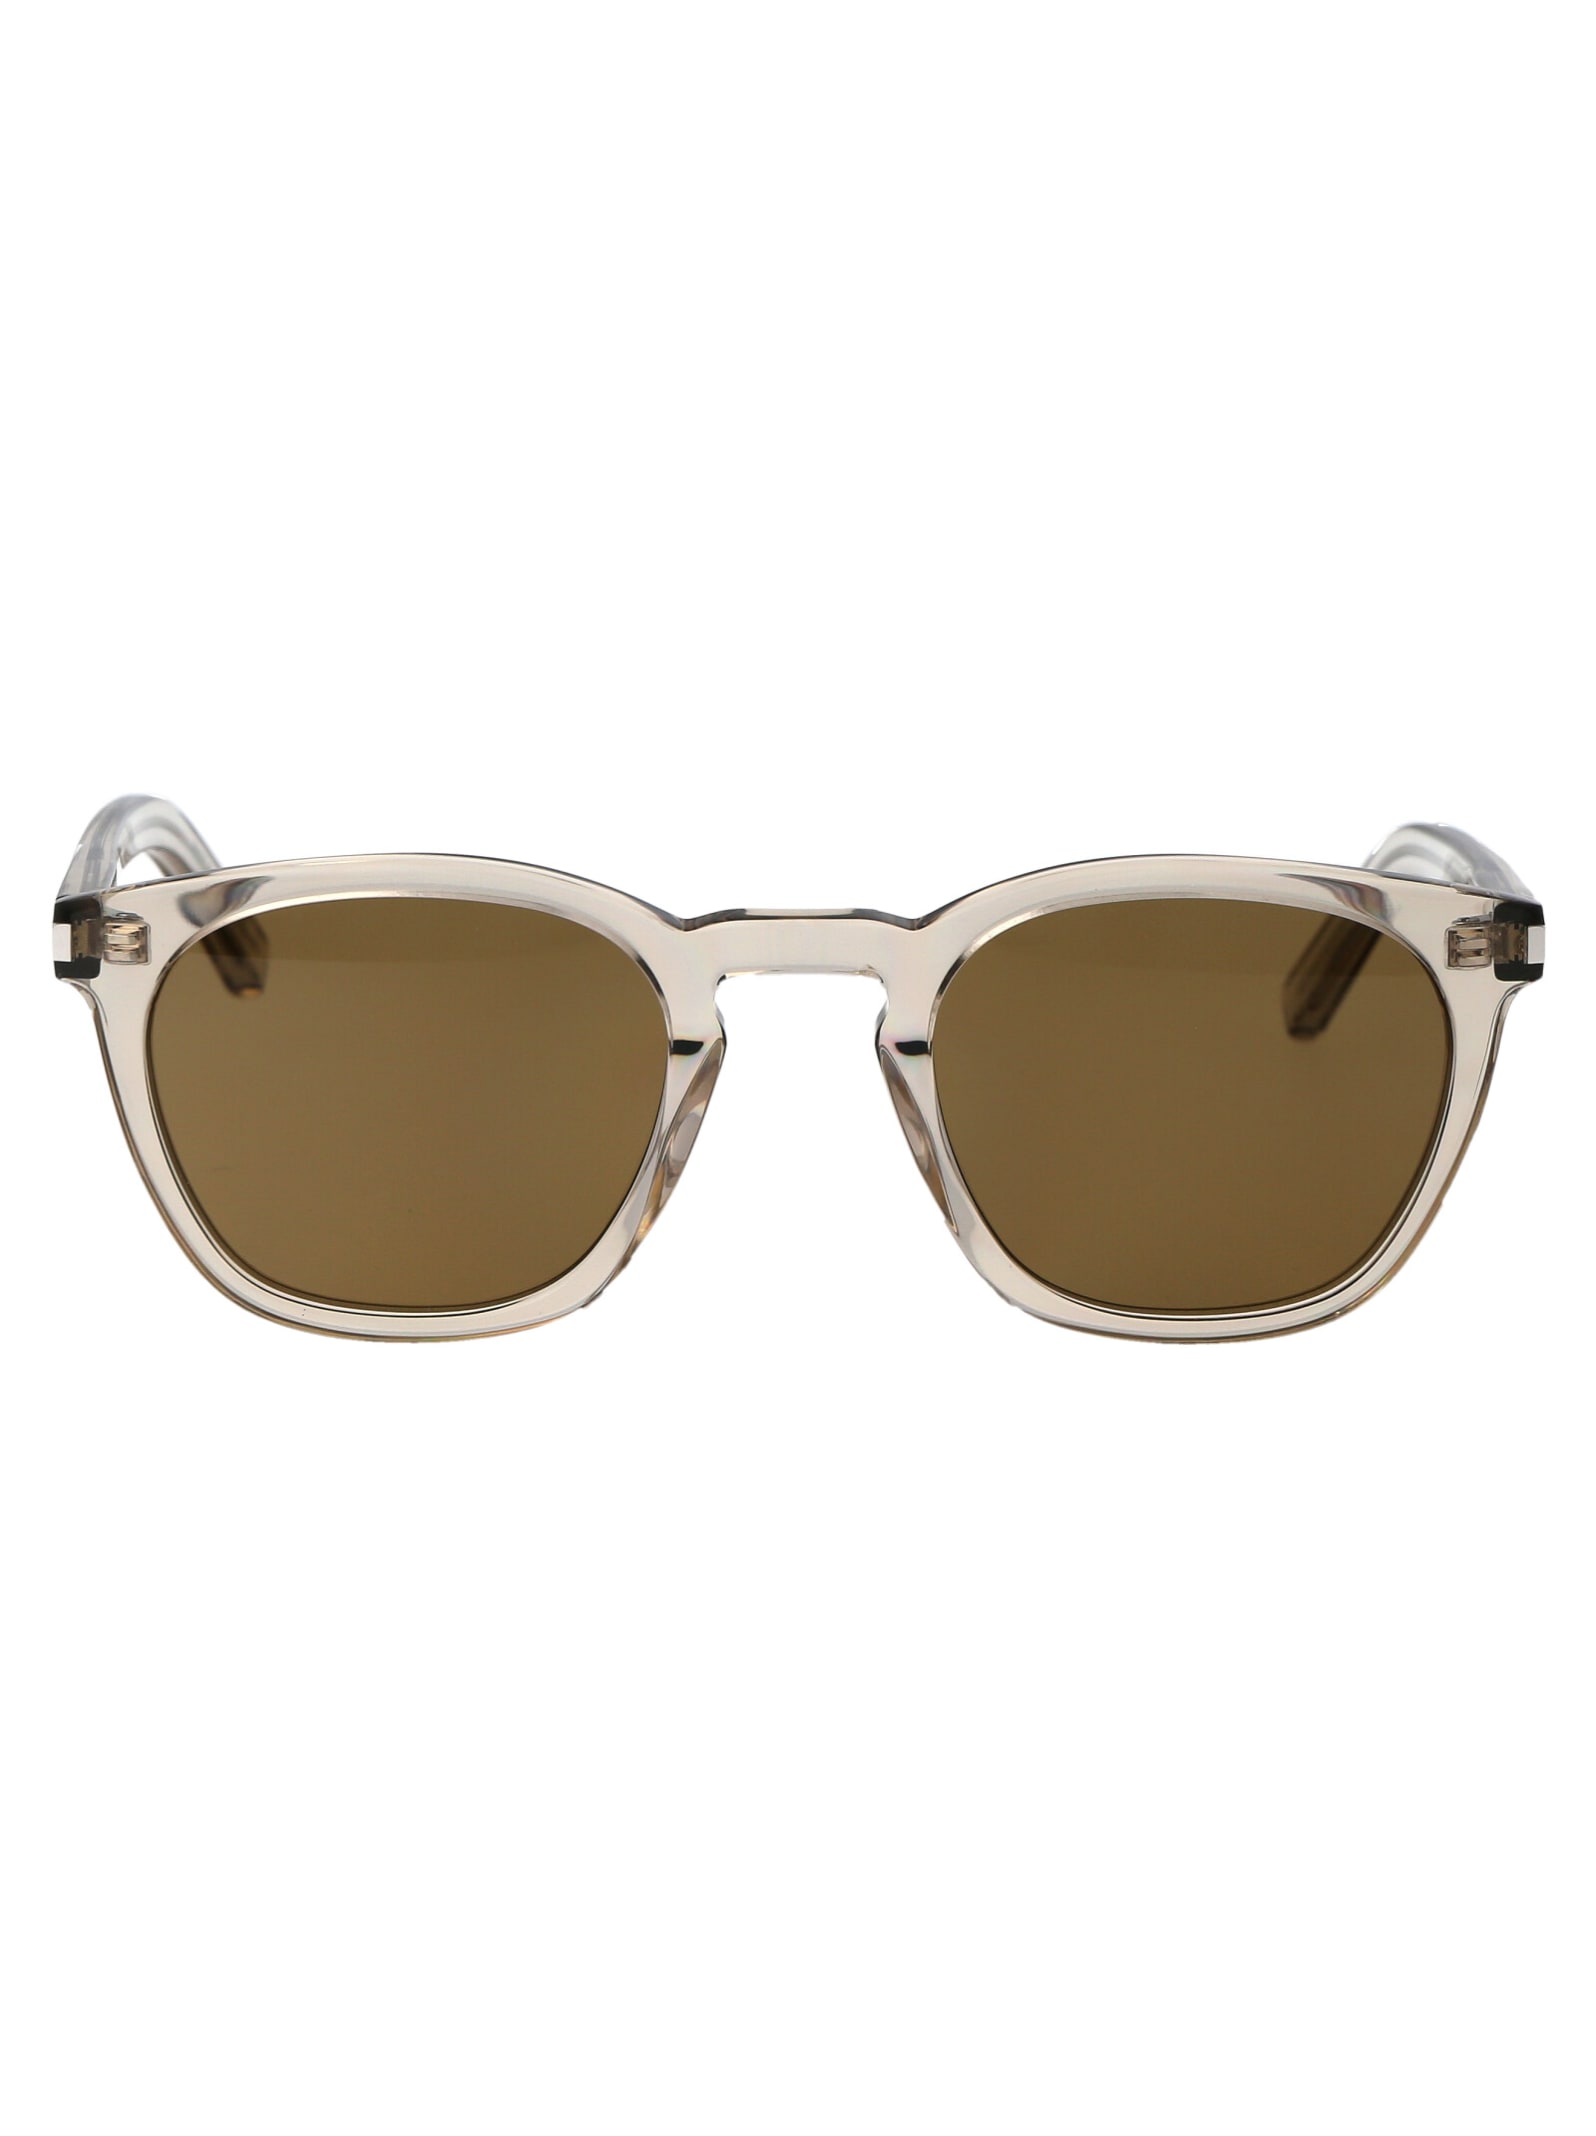 Saint Laurent Sl 28 Sunglasses In 047 Beige Beige Brown